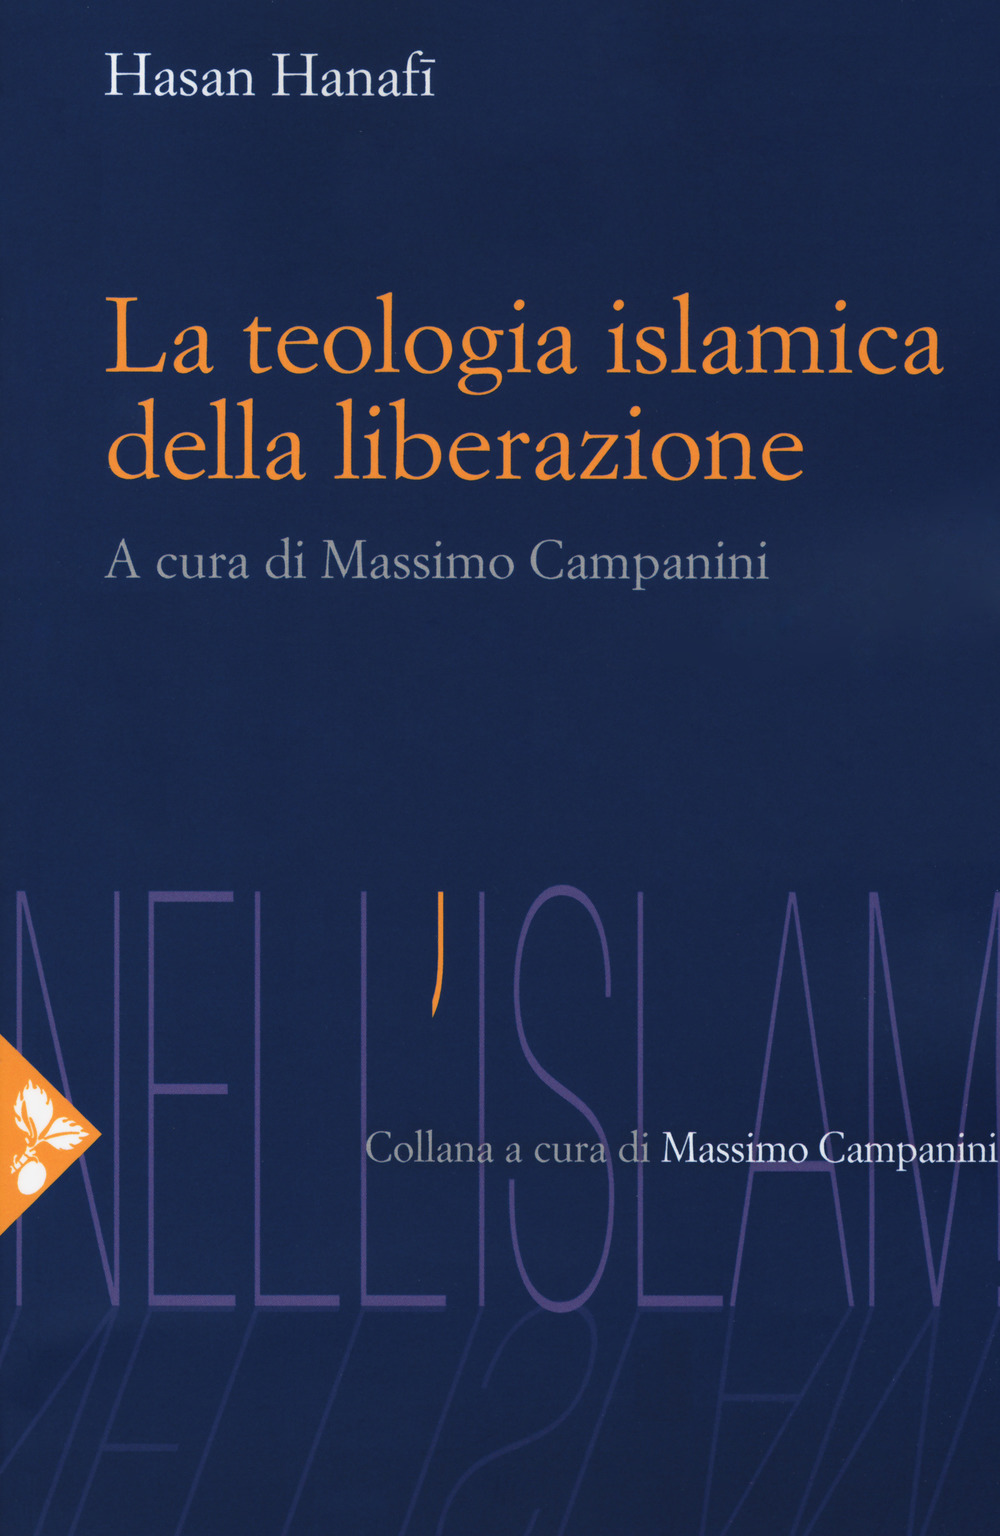 Image of La teologia islamica della liberazione